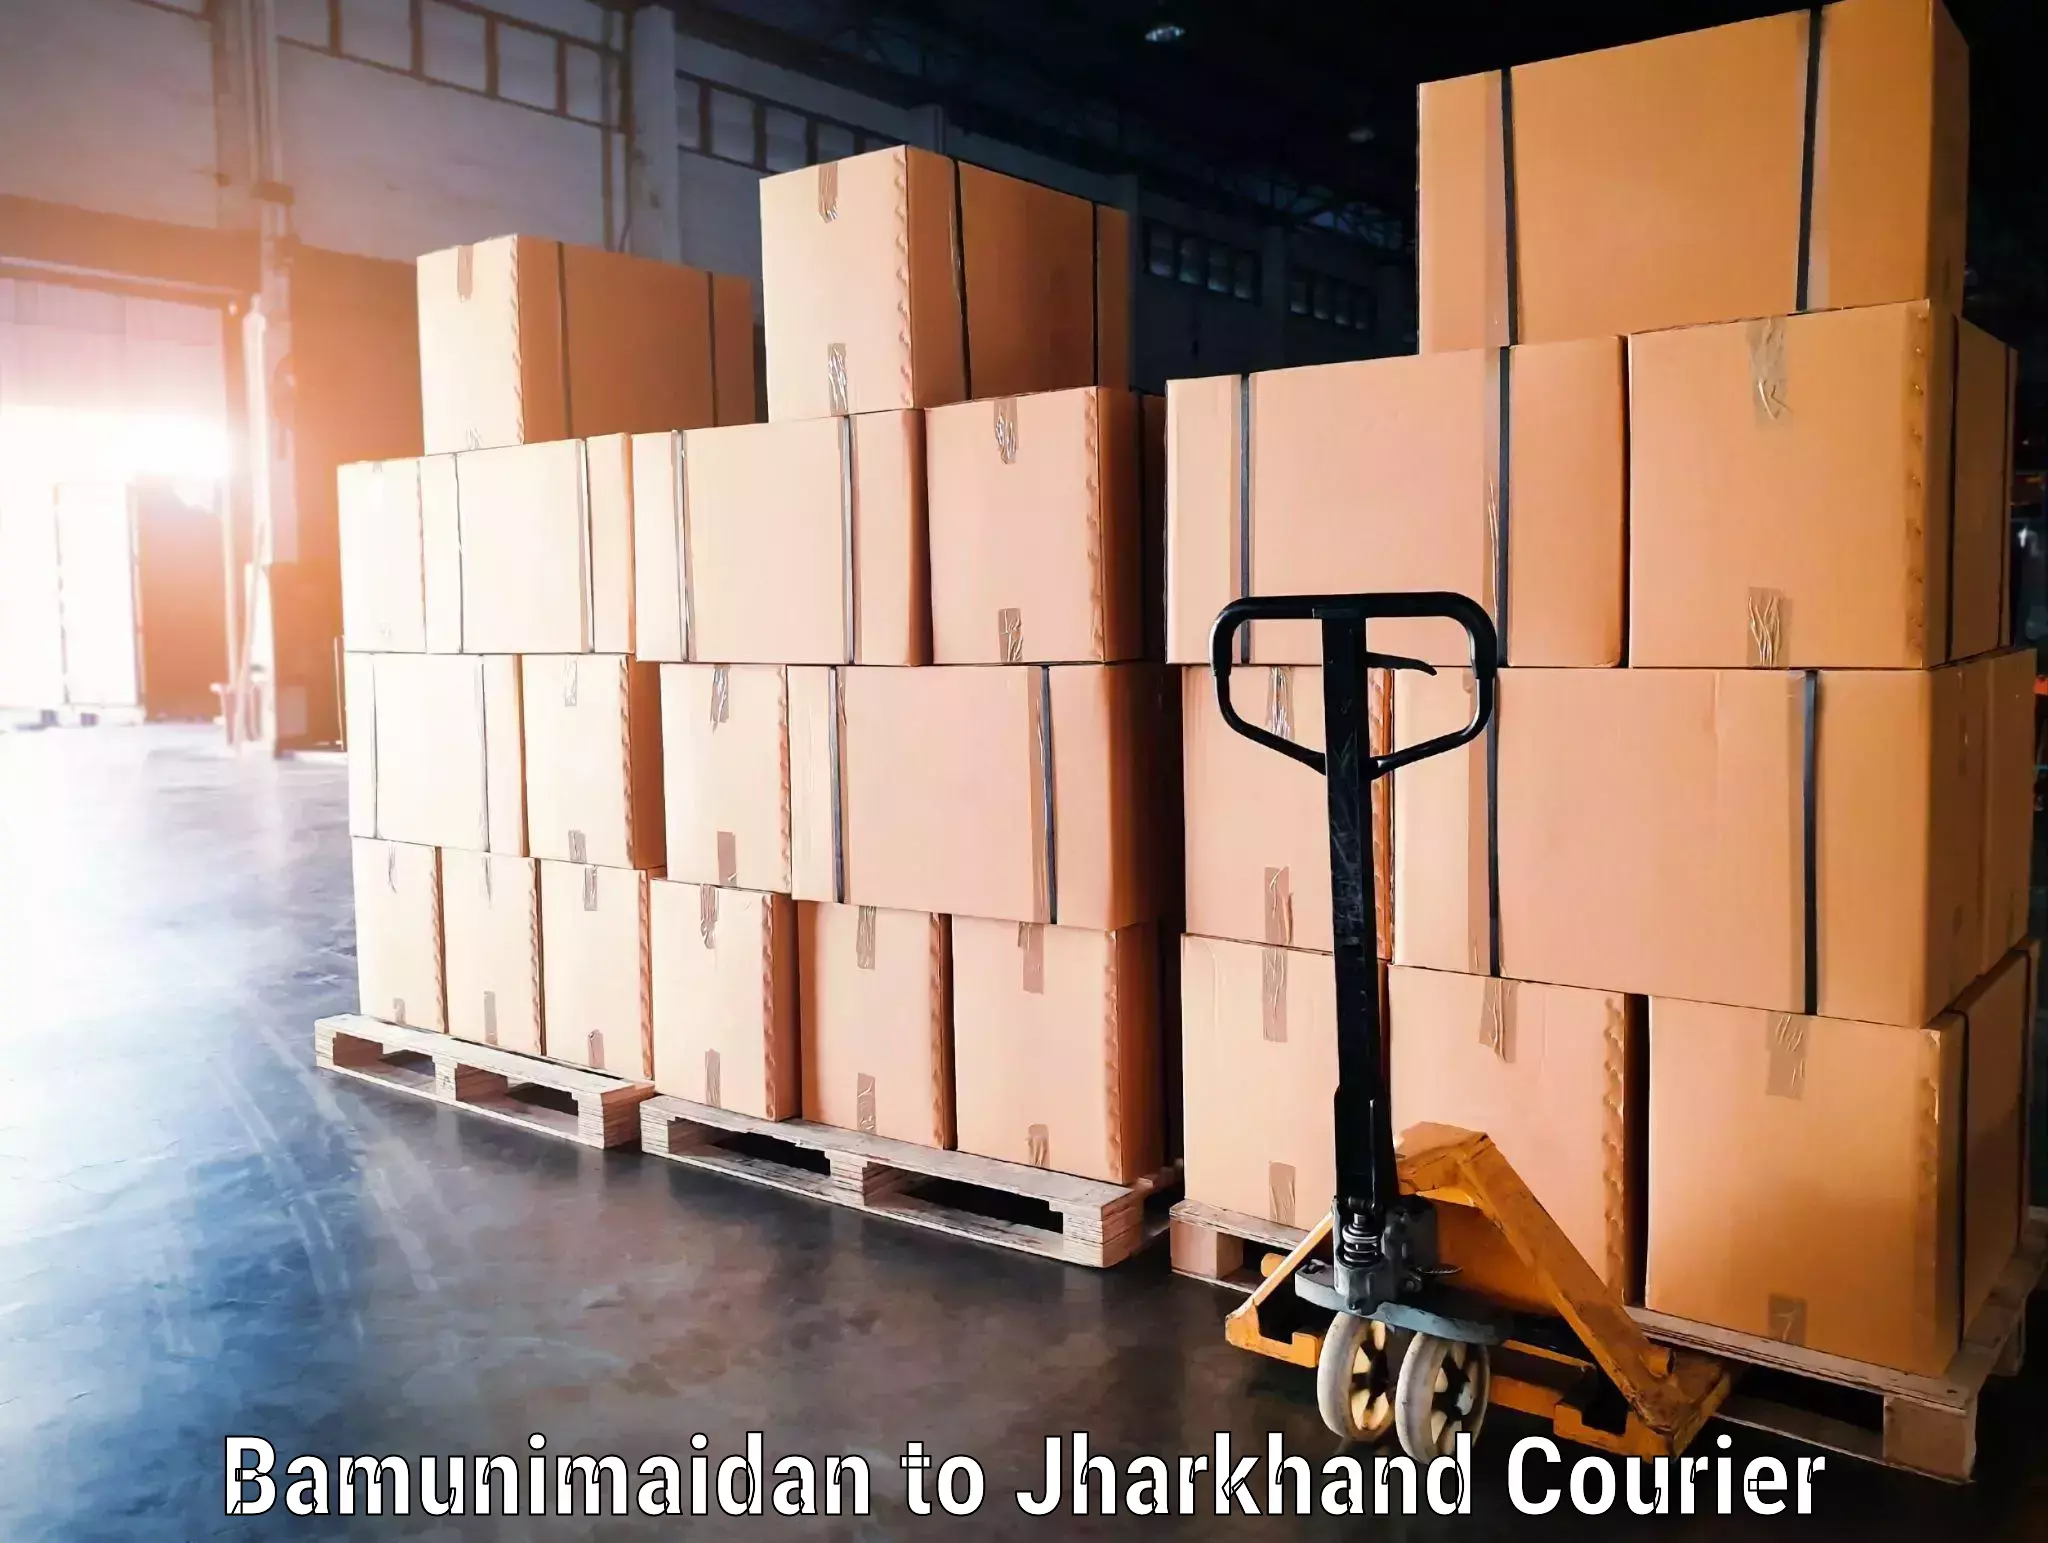 Hassle-free luggage shipping in Bamunimaidan to Ramgarh